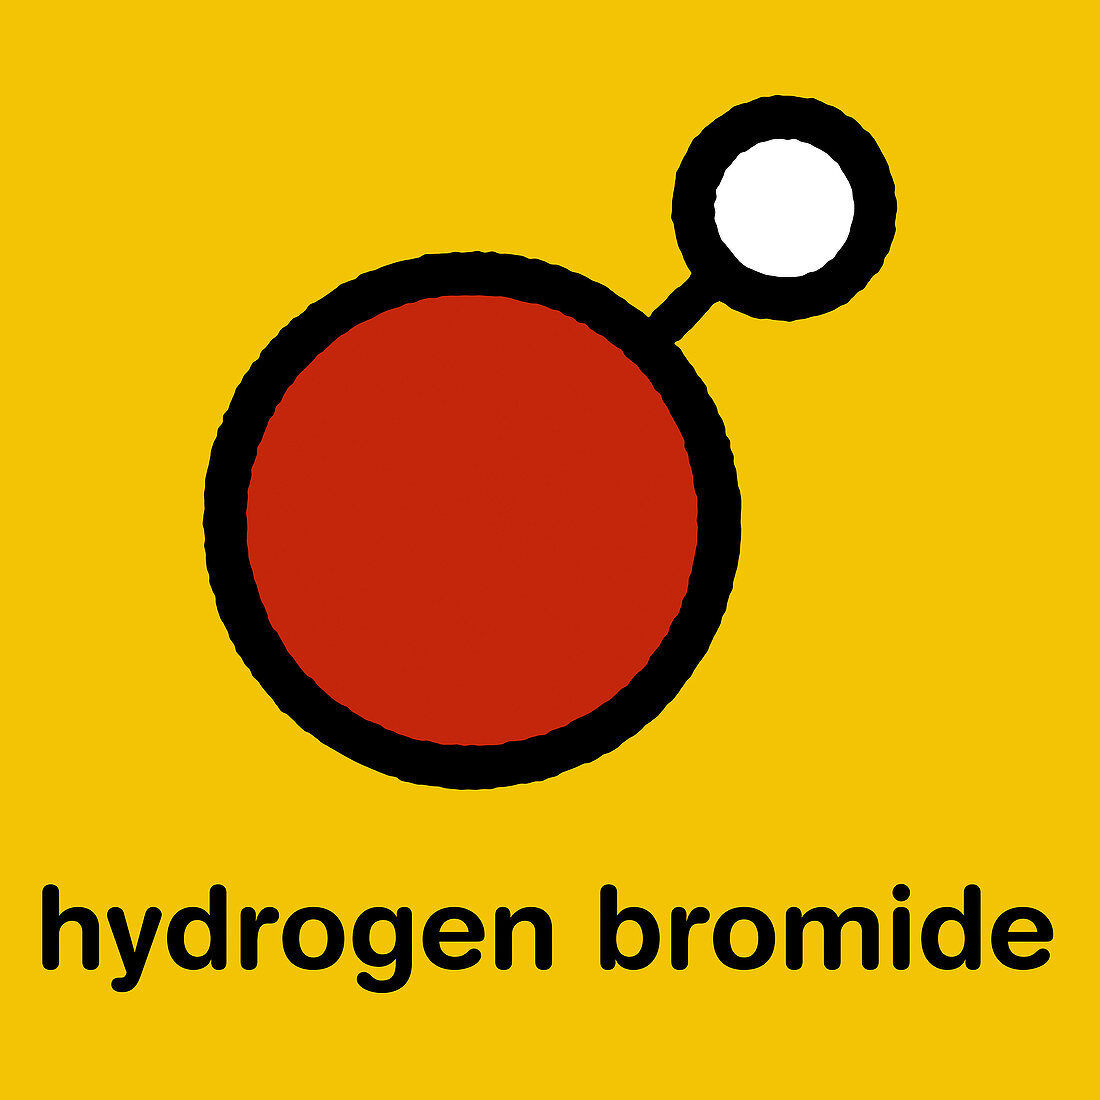 Hydrogen bromide molecule